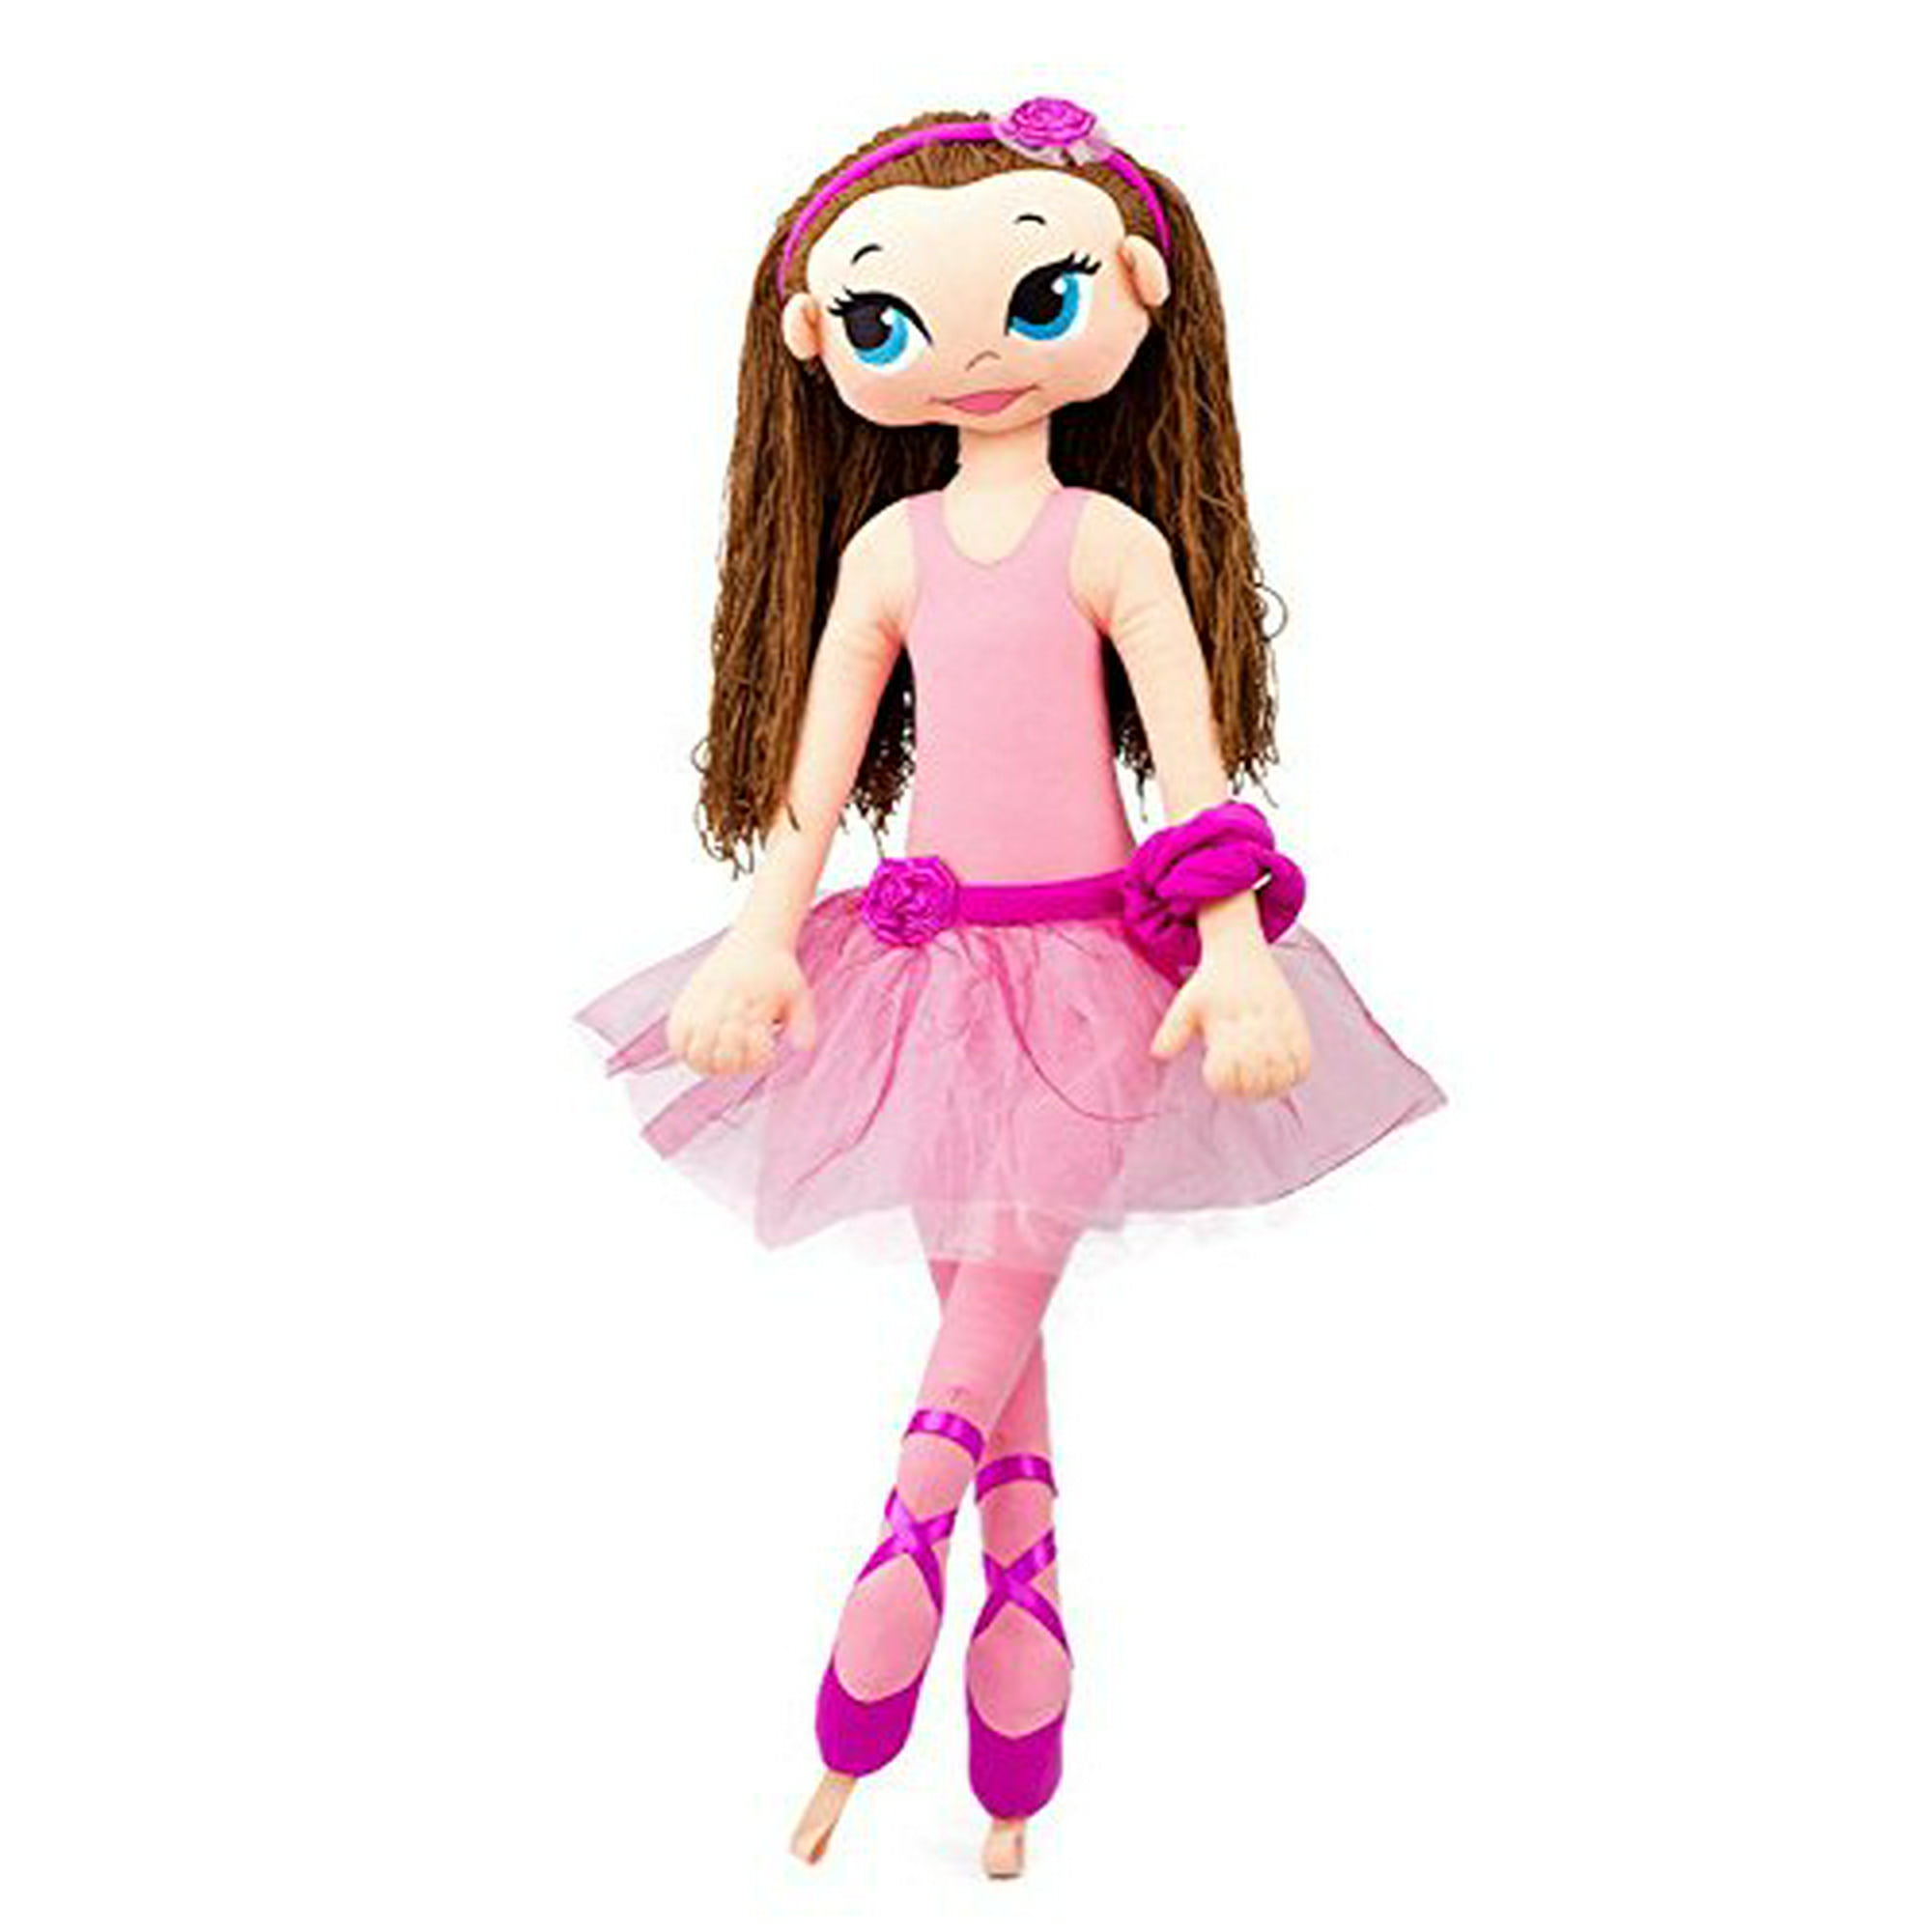 Barbie Muñeca bailarina, morena, tutú morado